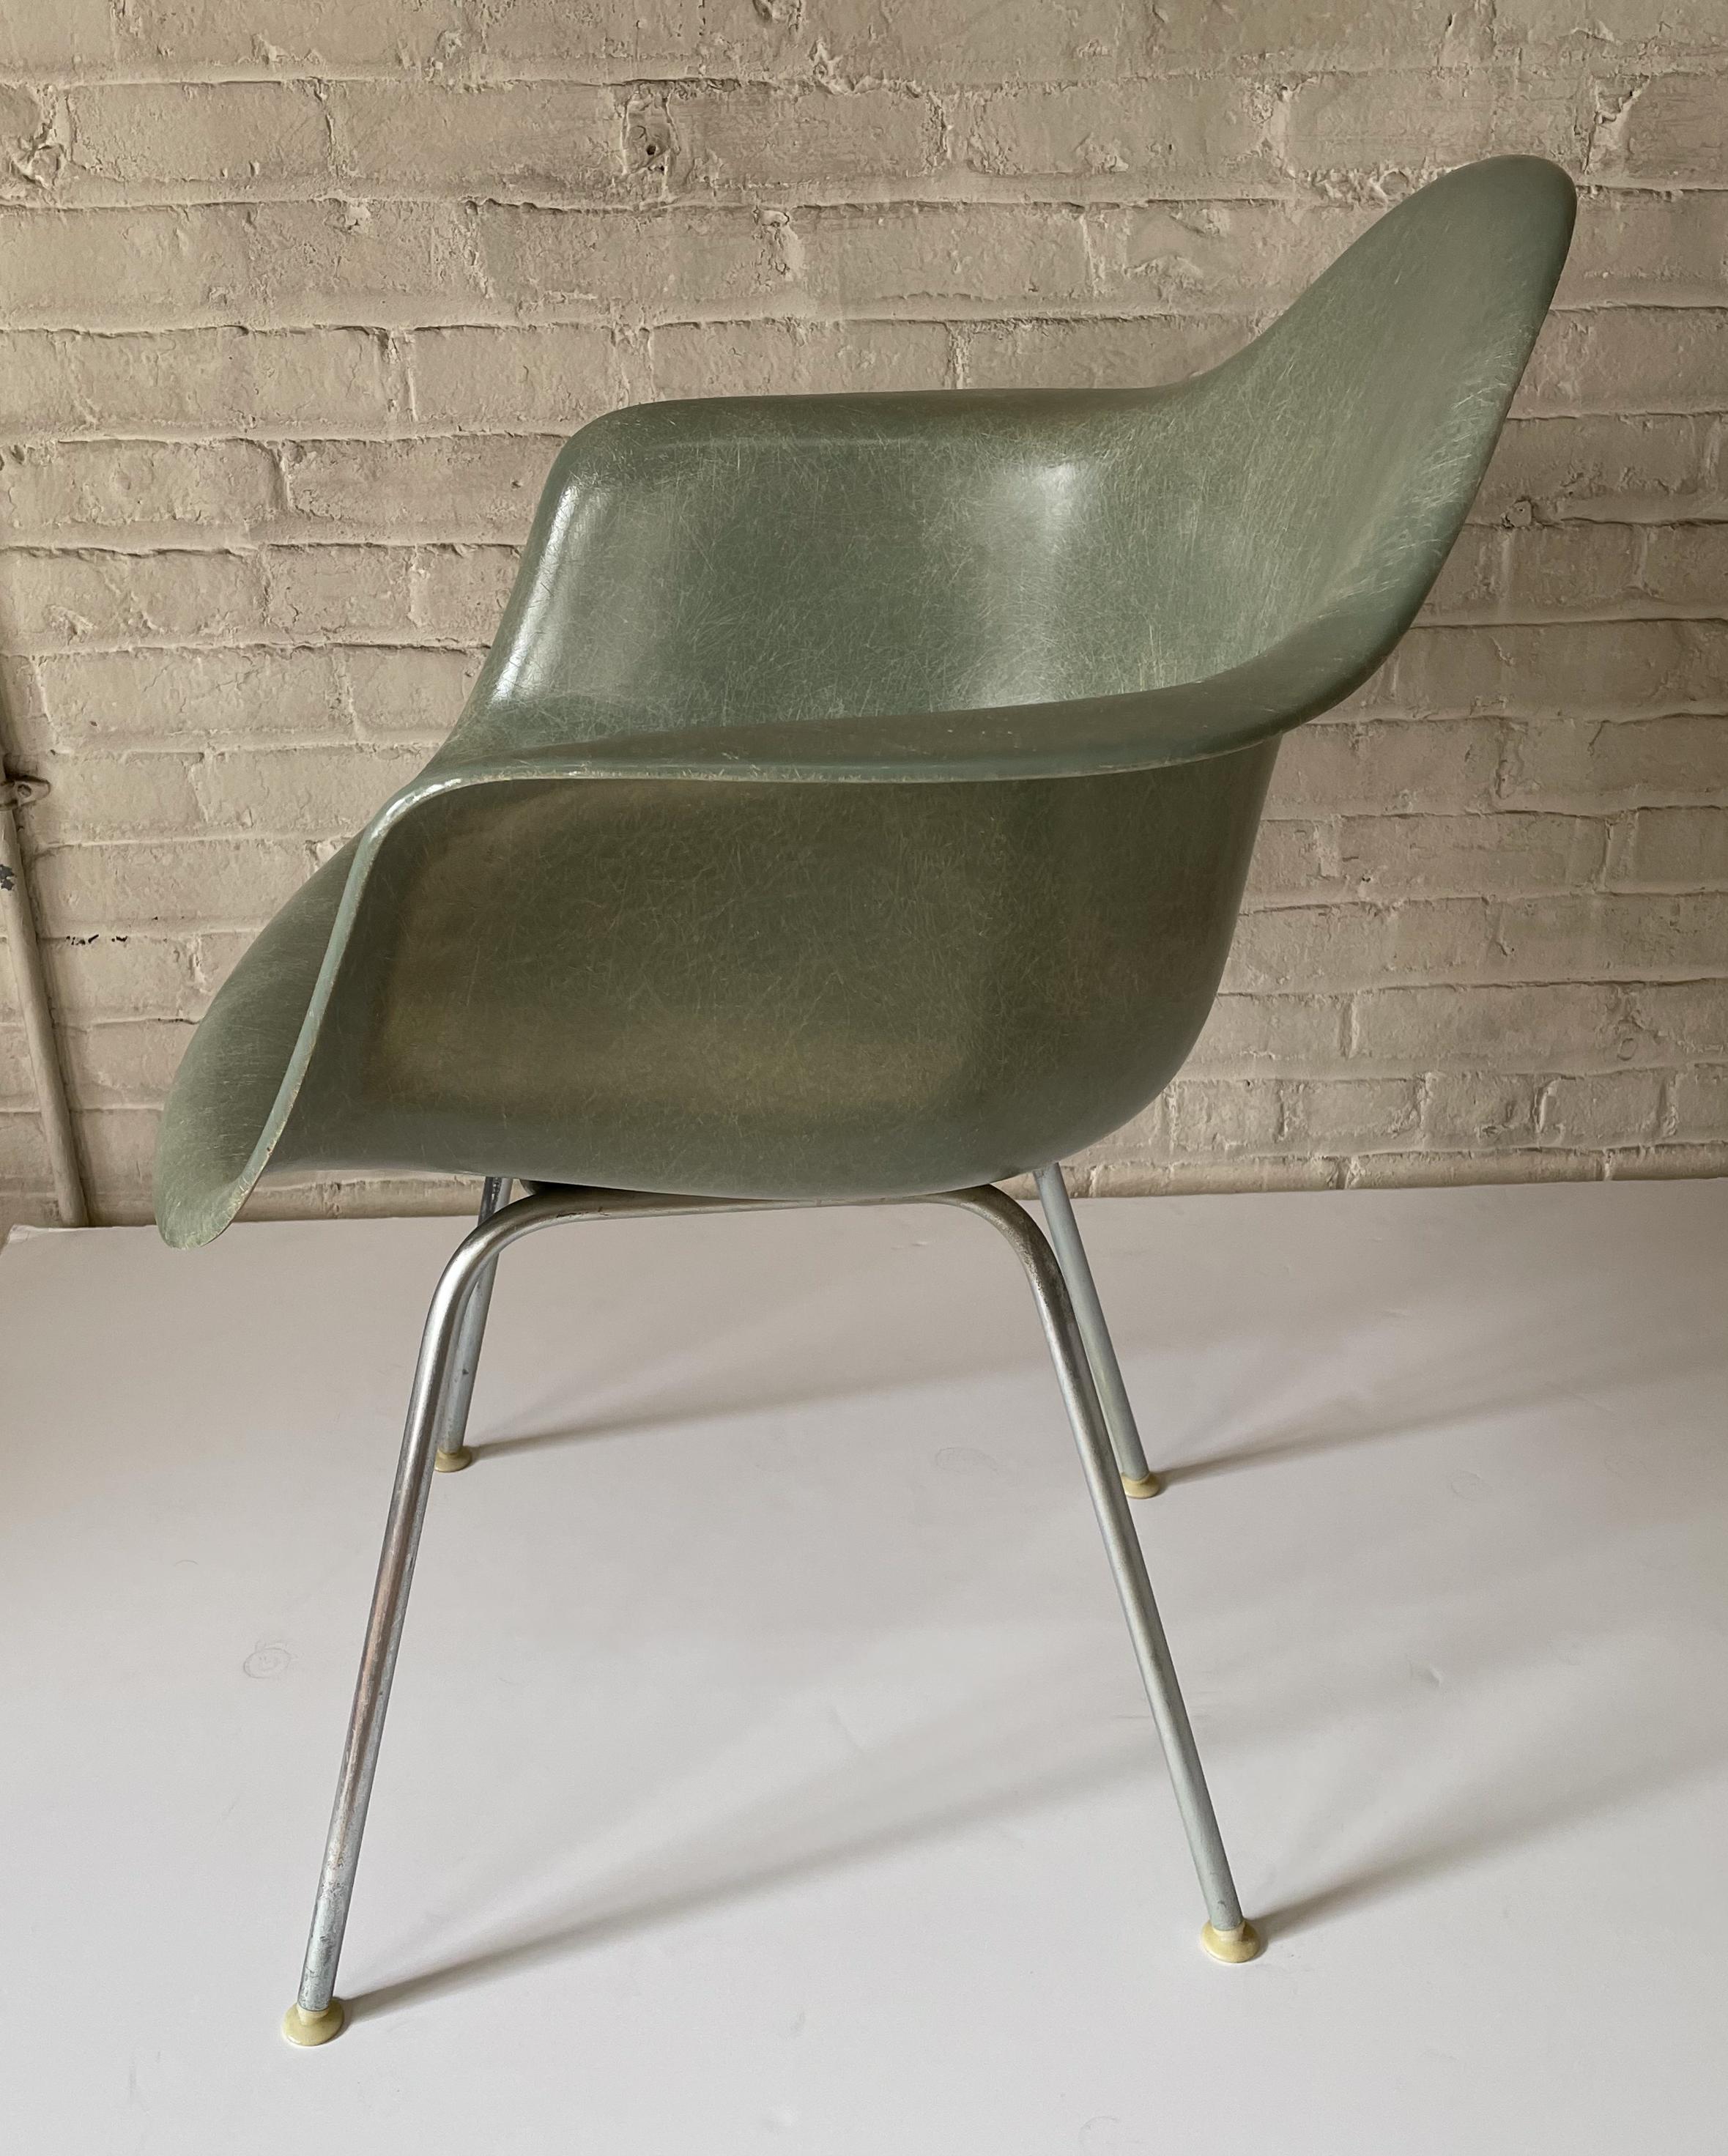 American Eames DAX Chair in Seafoam Green